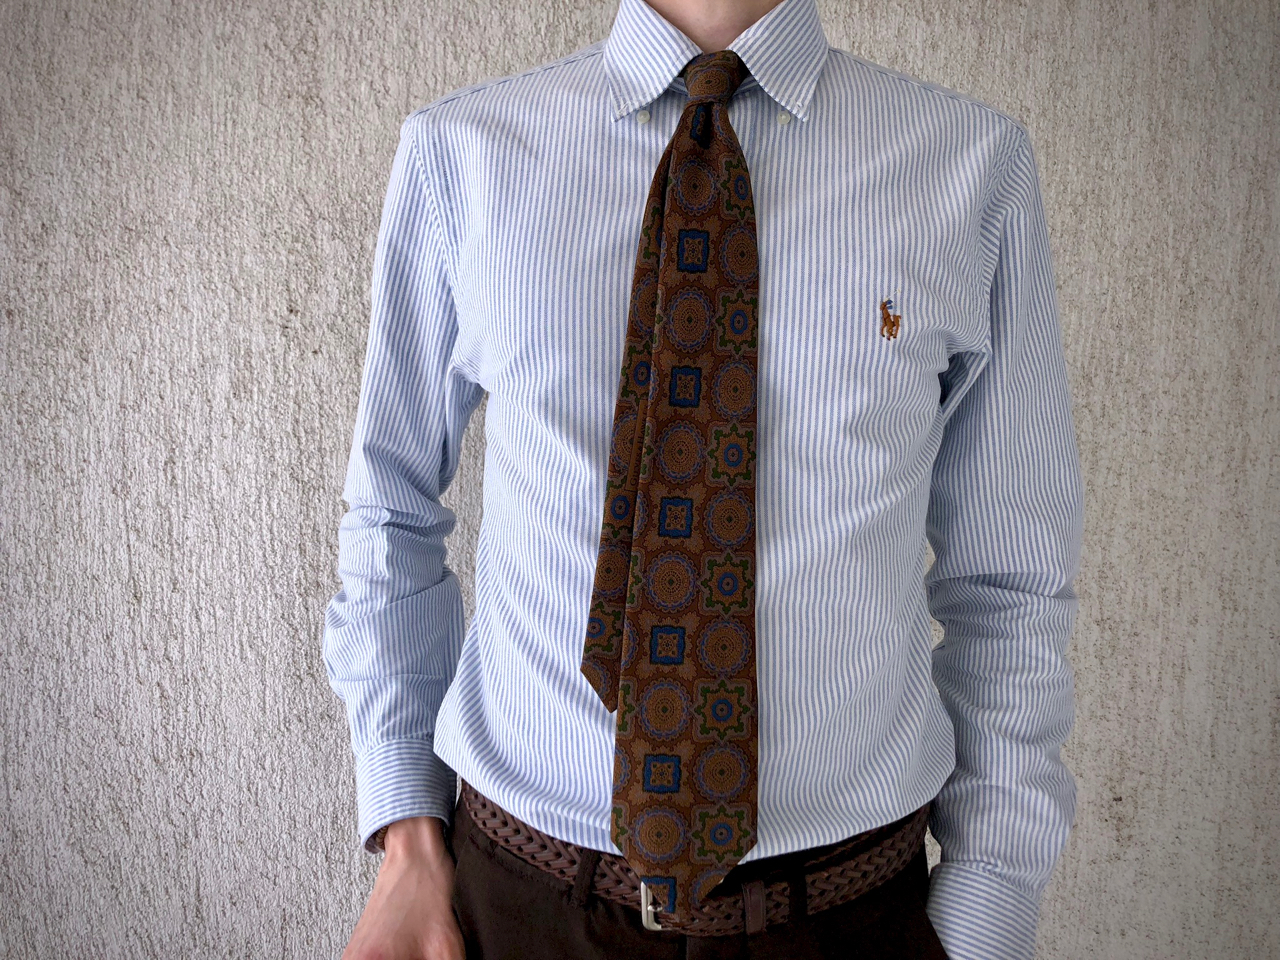 gentlemanstyle-madder-silk-tie-oxford-shirt-ivy-style-stilus